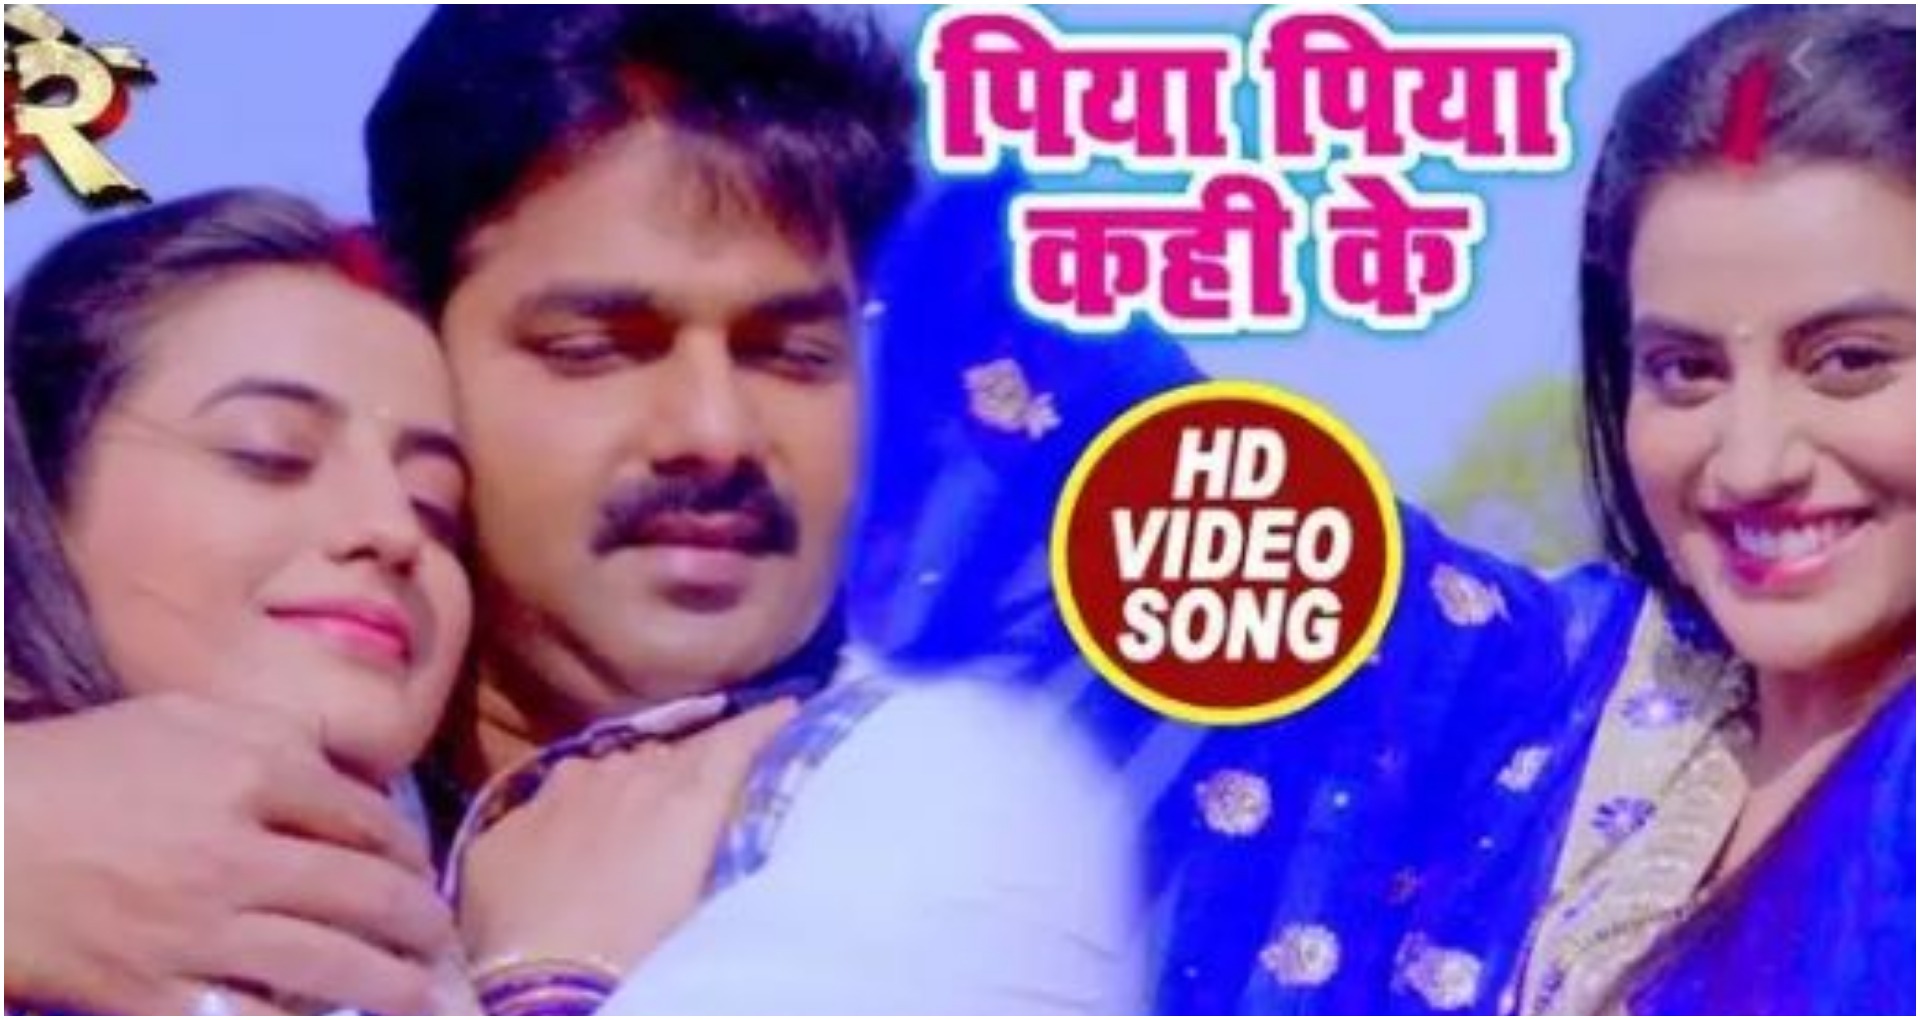 Bhojpuri Viral Song: पवन सिंह और अक्षरा सिंह के गाने ने सोशल मीडिया पर मचाया धमाल, देखें वीडियो